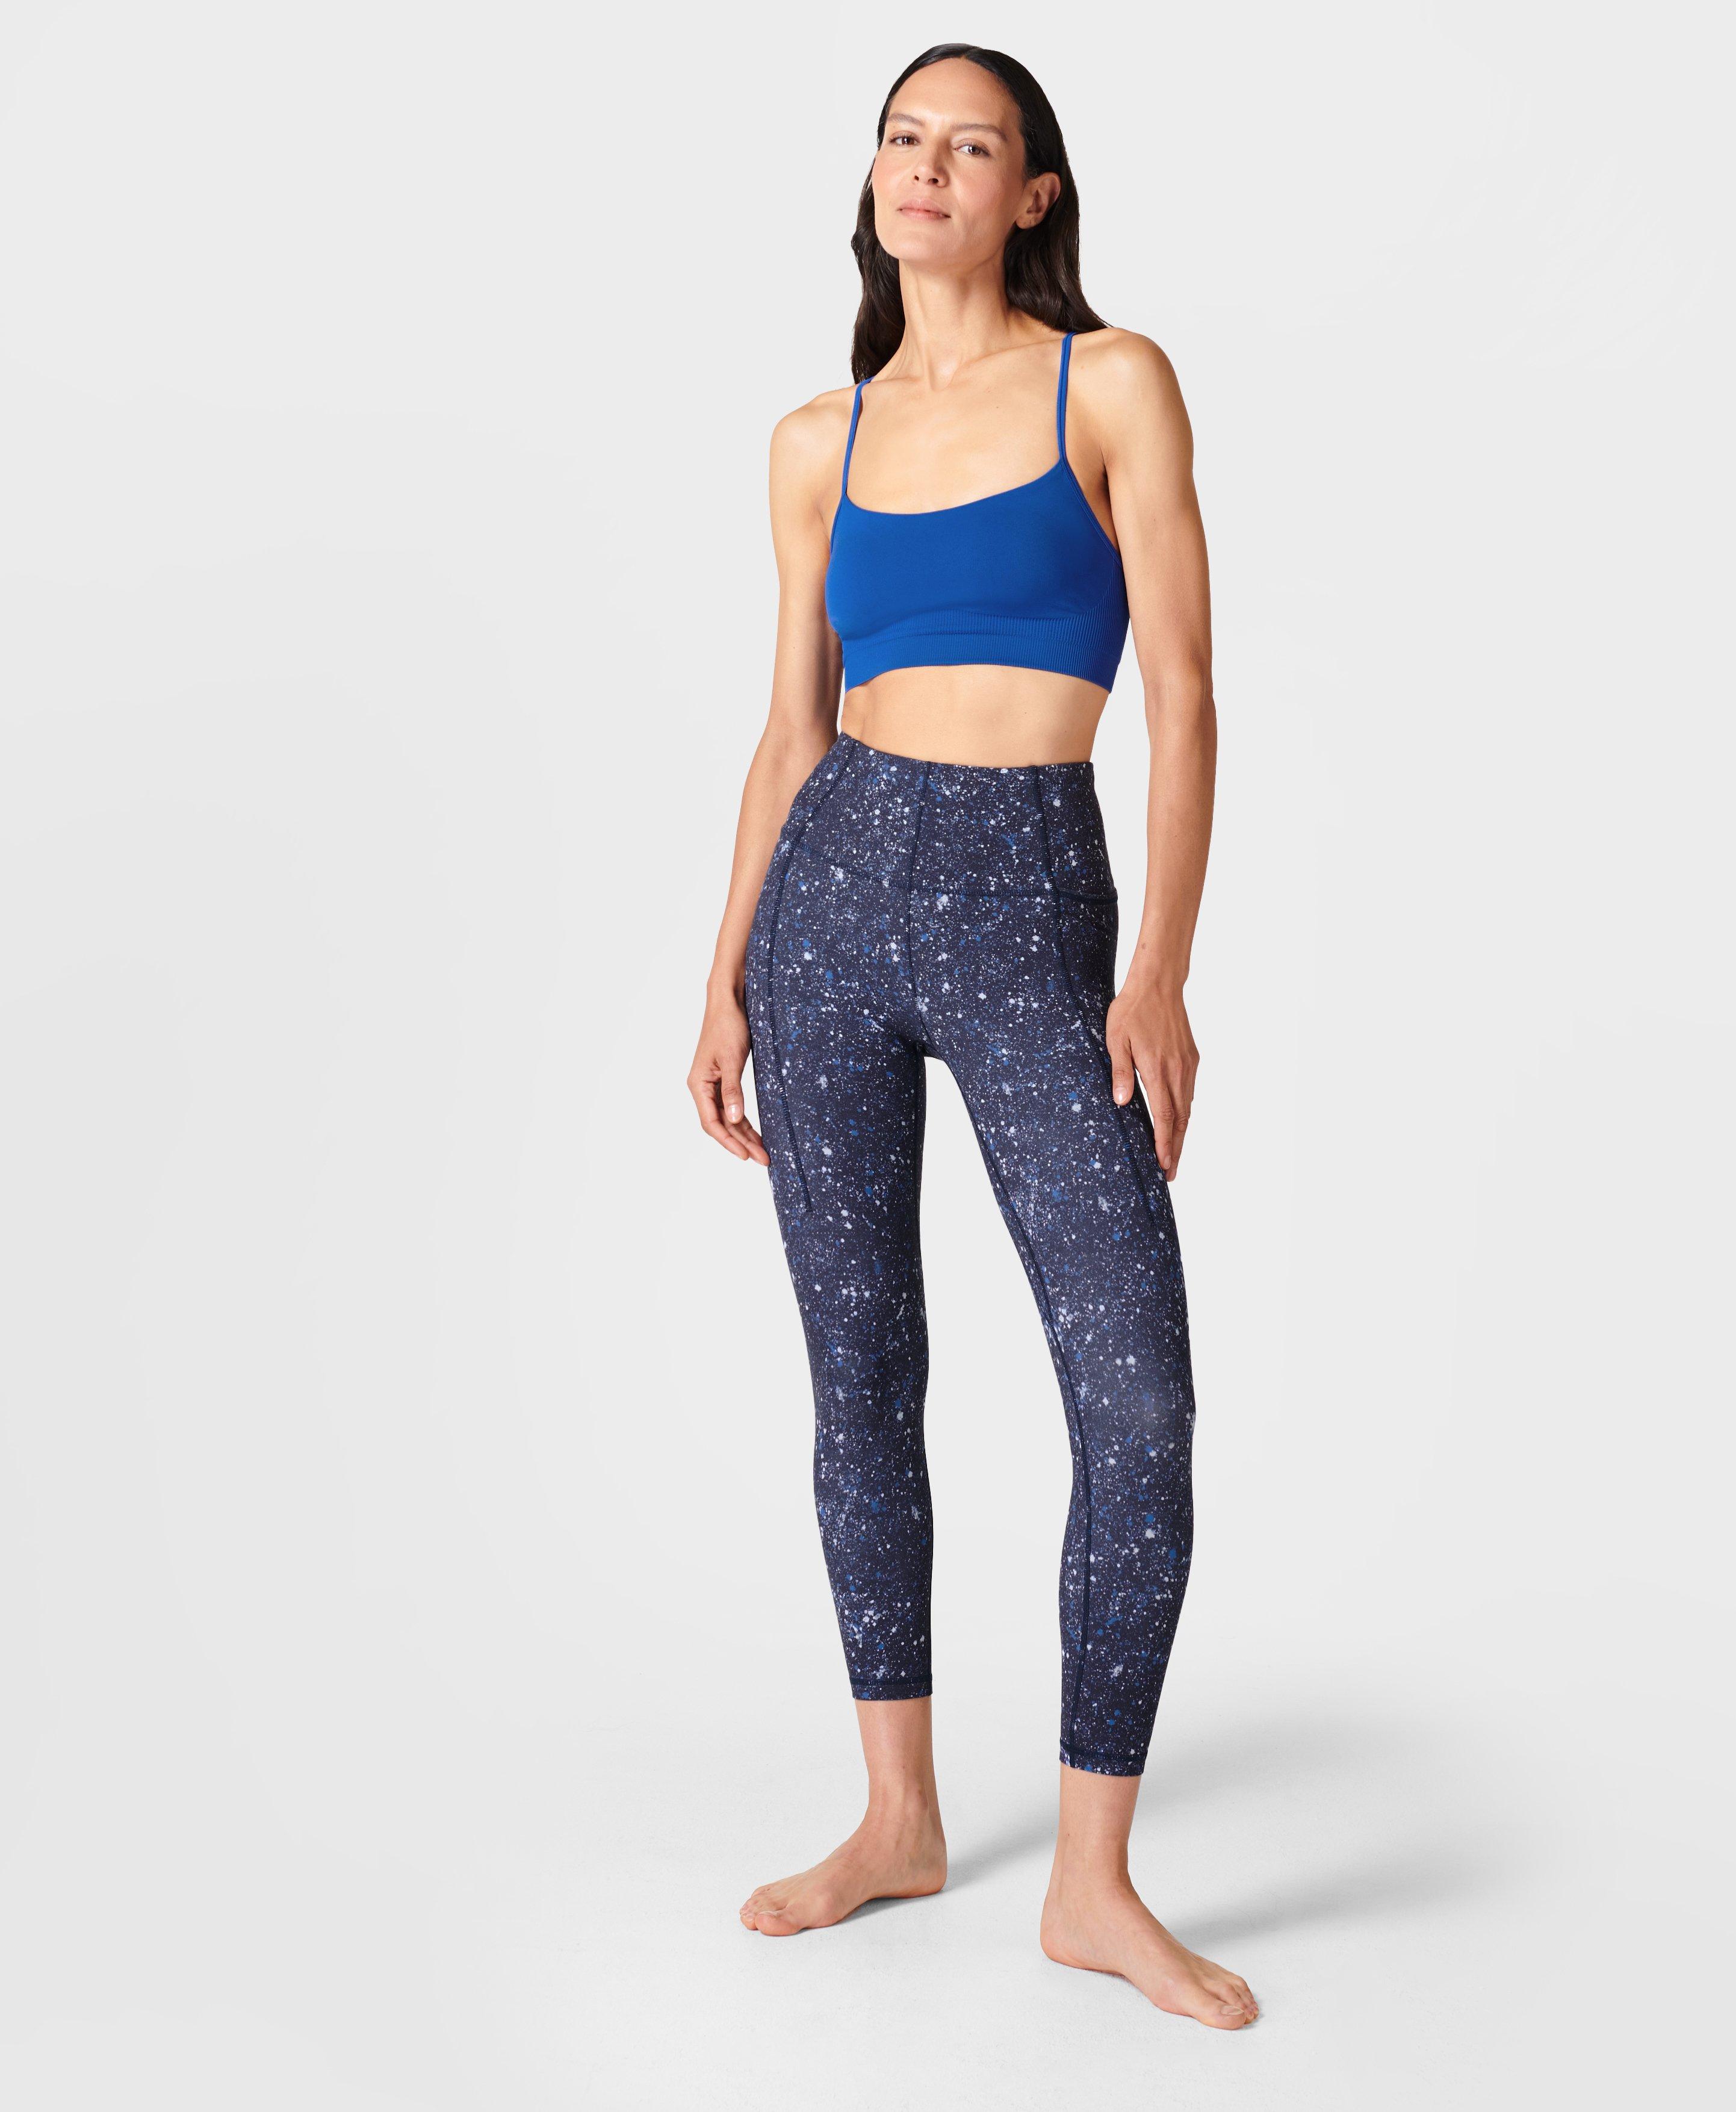 Super Soft 7/8 Yoga Leggings - Blue Multi Speckle Print, Women's Leggings